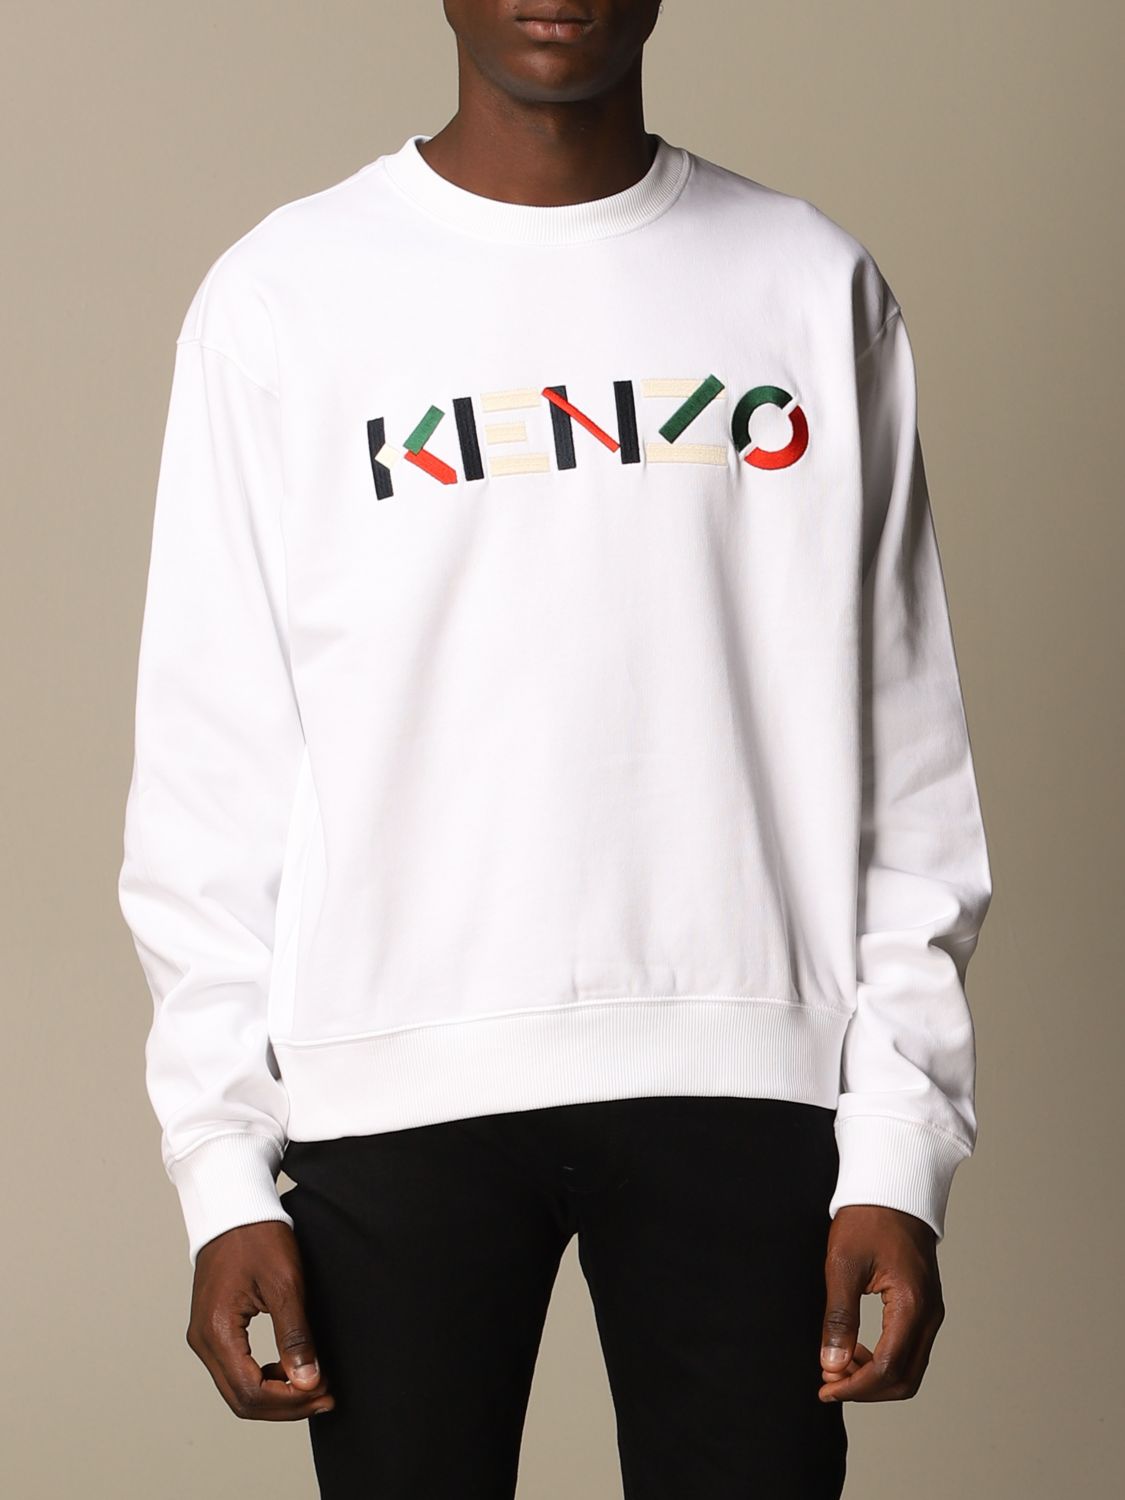 Kenzo Logo Sweatshirt Top Sellers, 45% OFF | www.ilpungolo.org